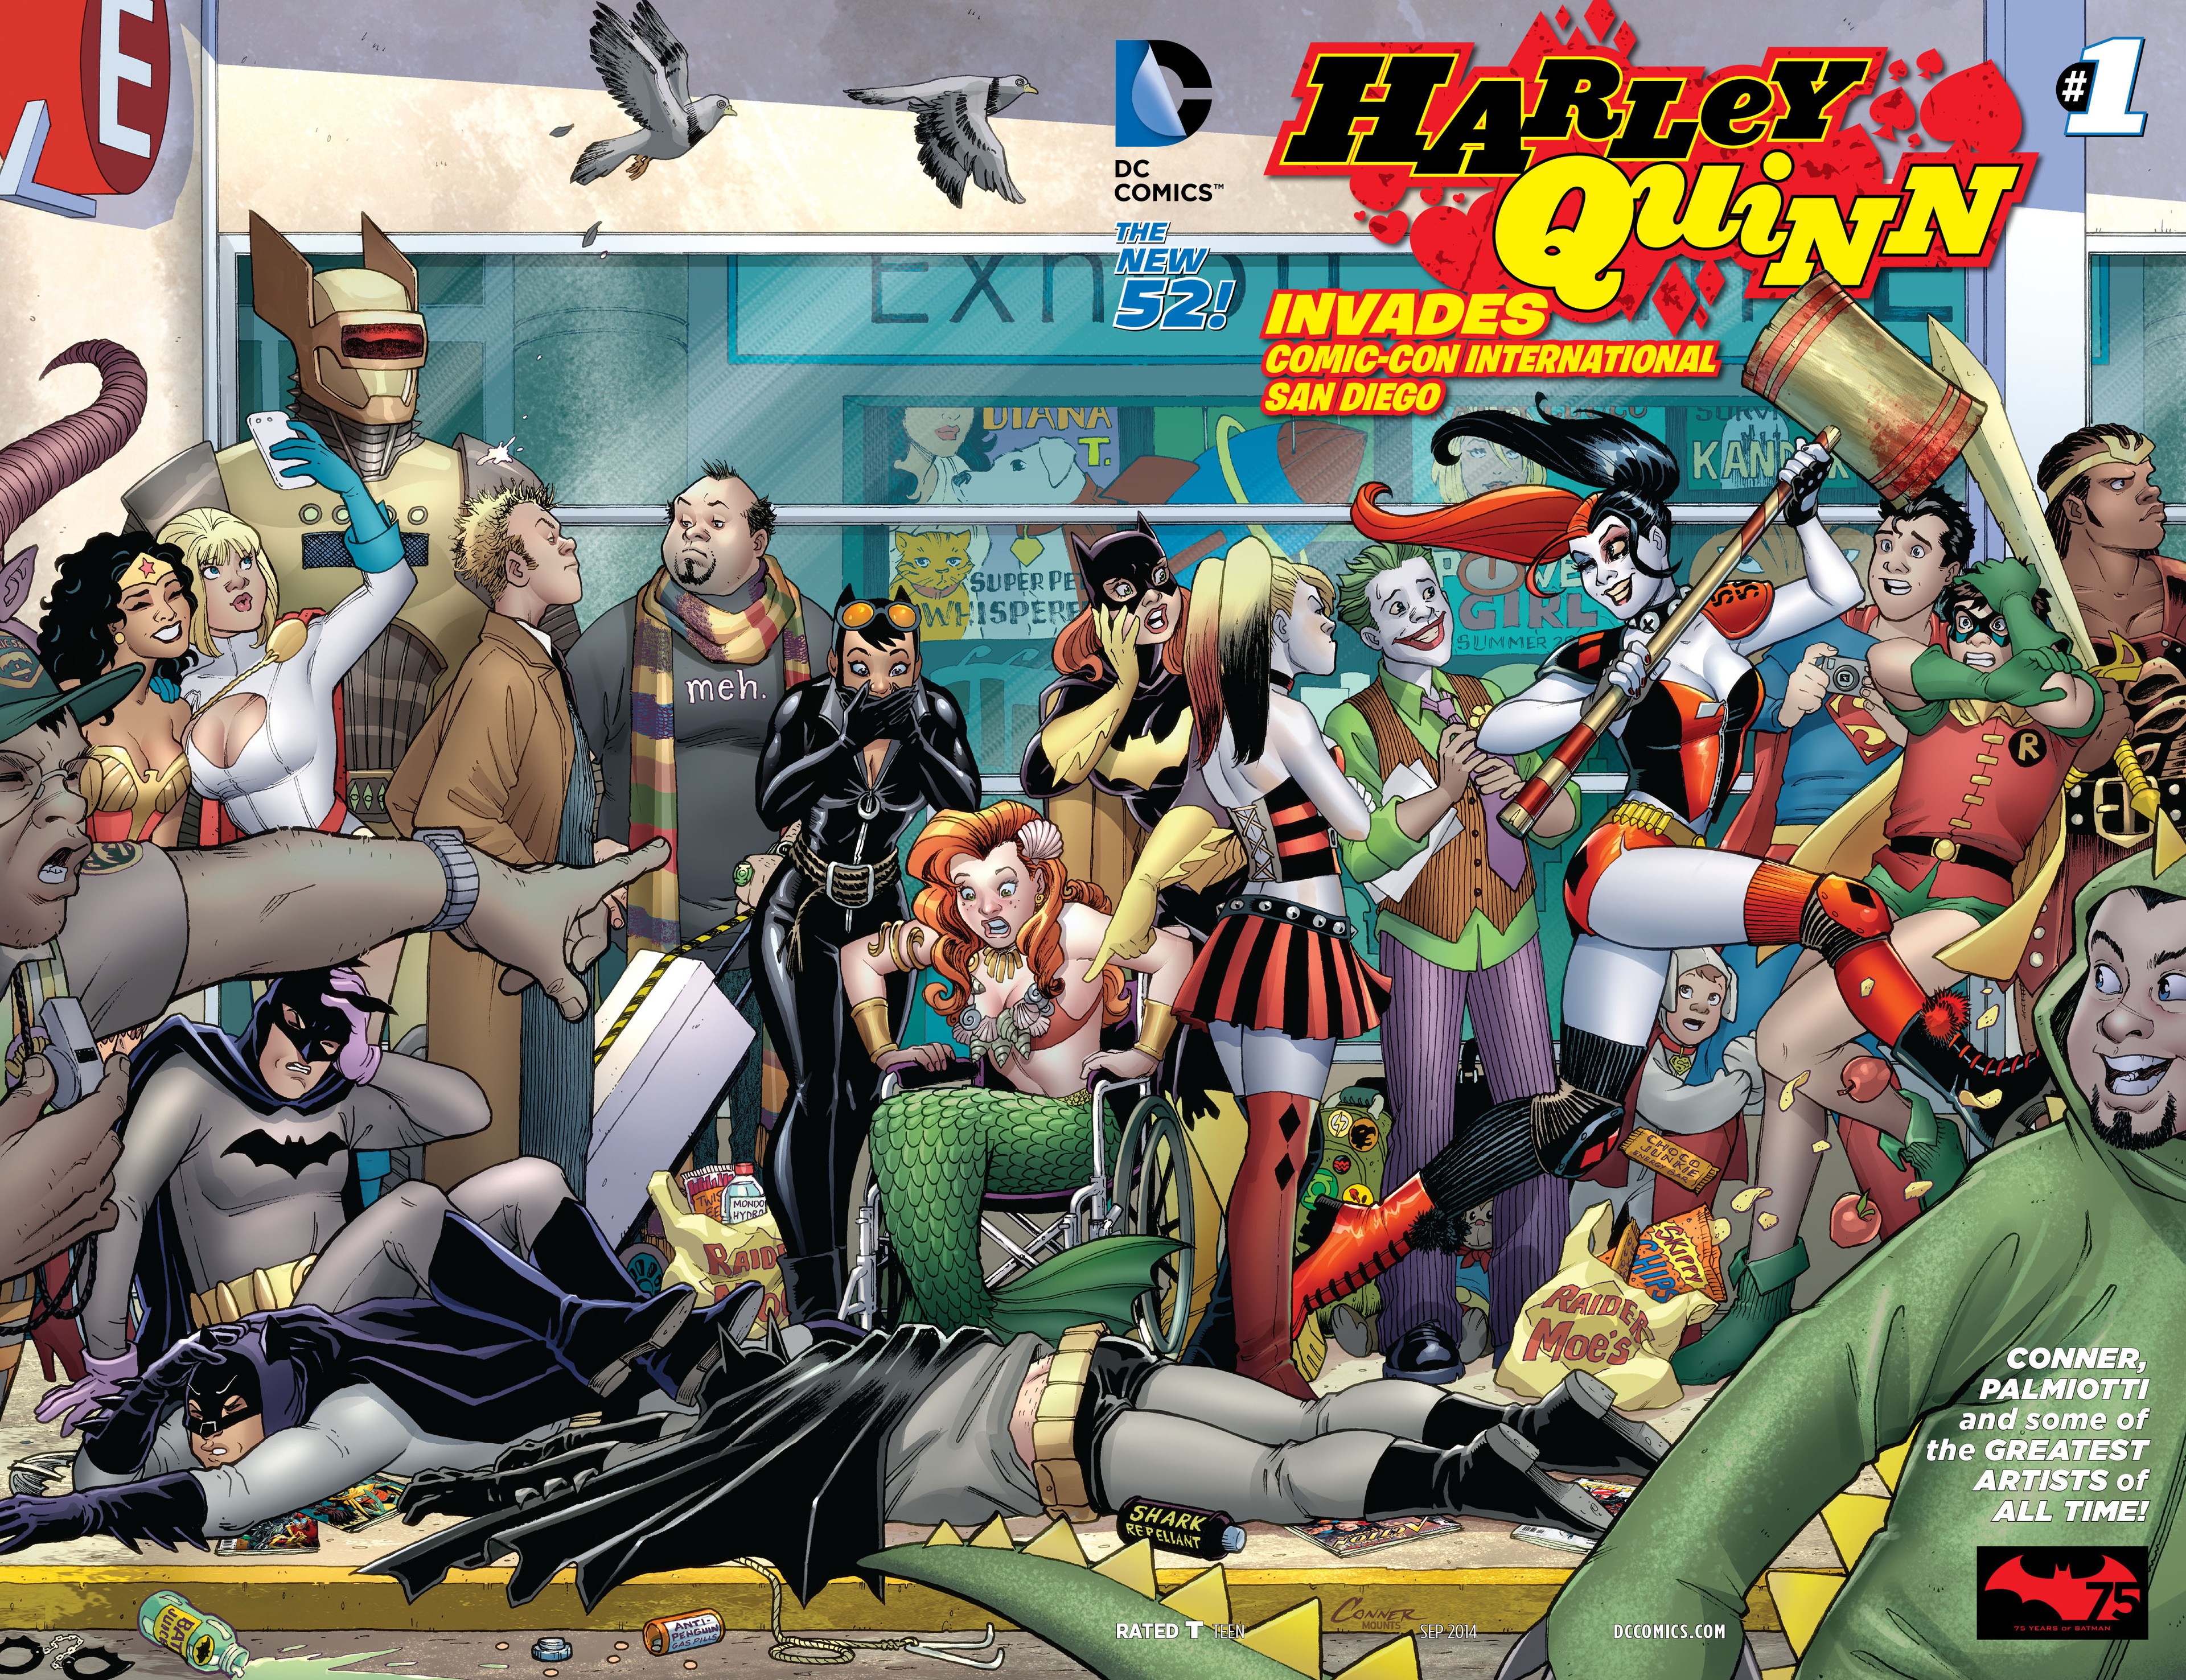 Harley Quinn Invades Comic-Con International: San Diego Vol. 1 #1